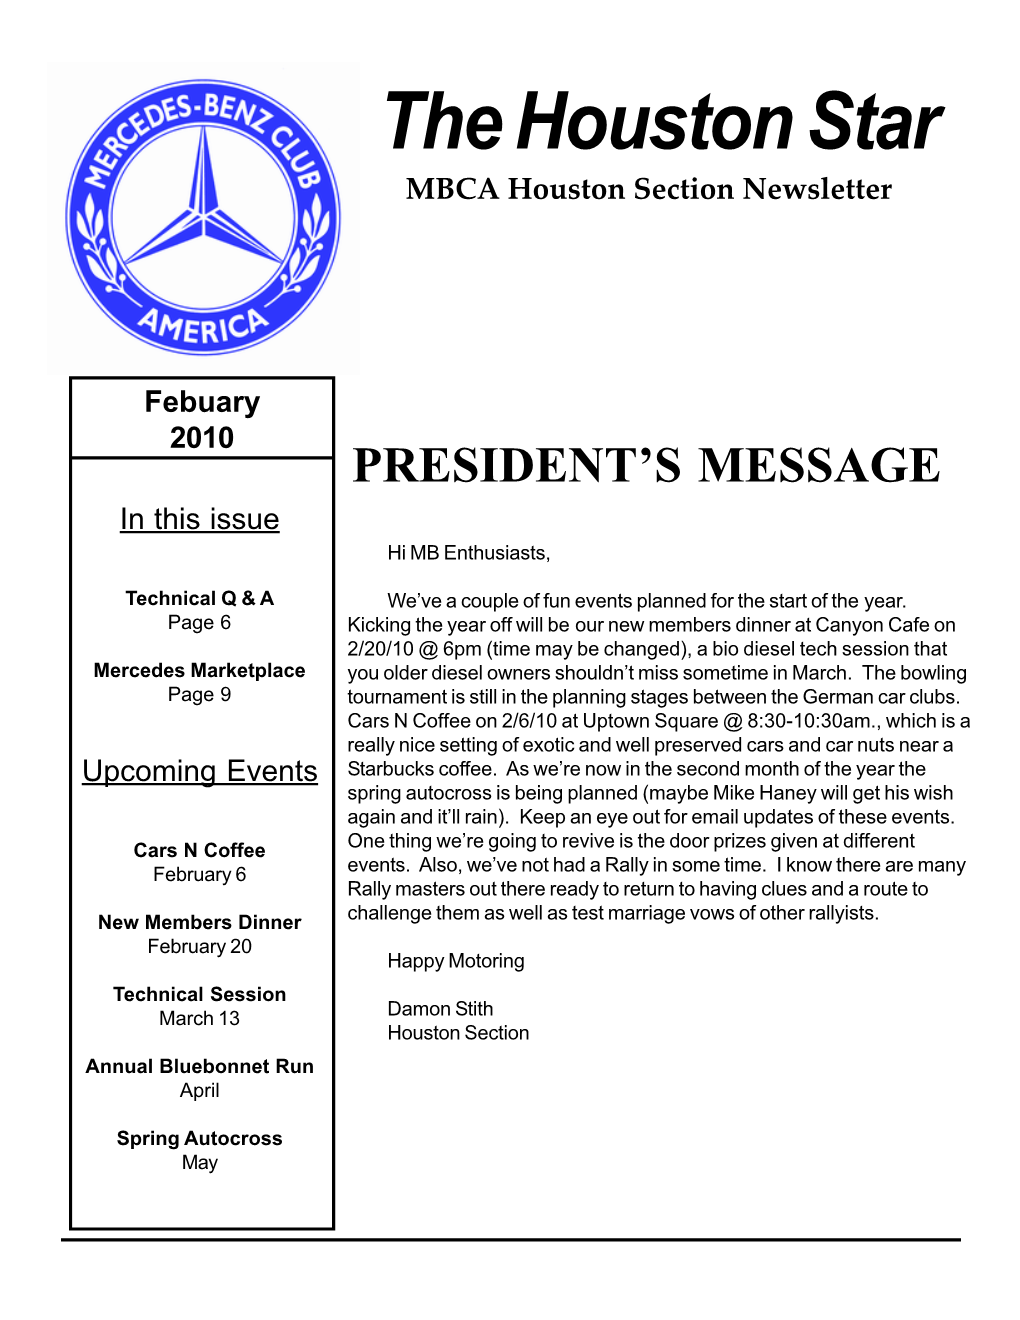 The Houston Star MBCA Houston Section Newsletter